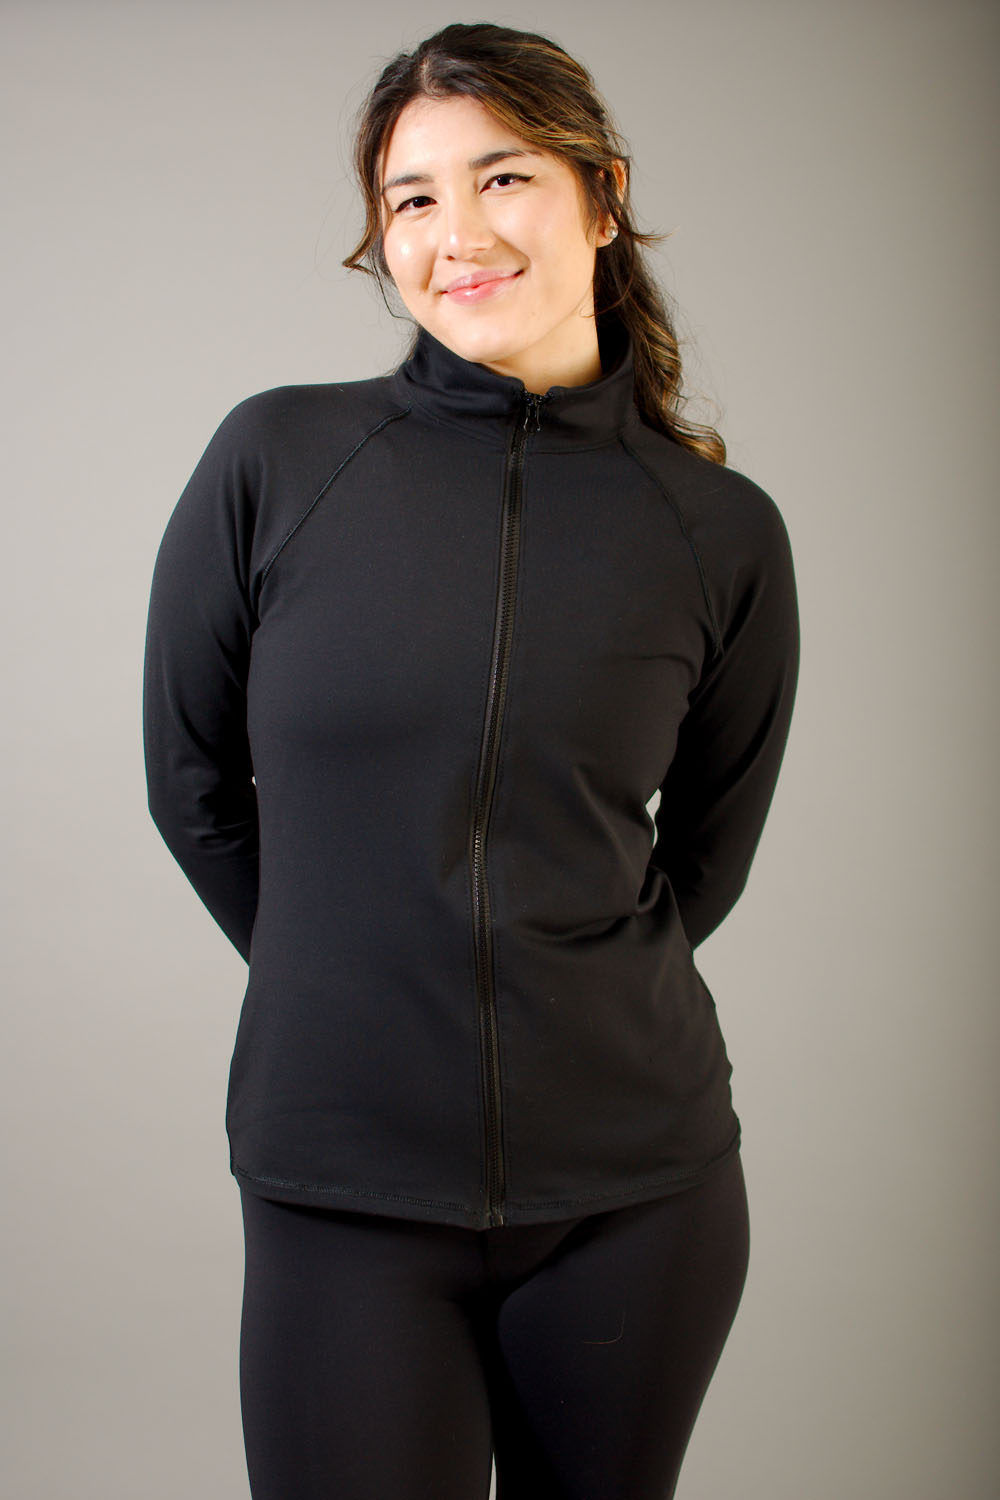 Vêtement Création Wissa fait 100% au Québec : Veste de survêtement en supplex noir - Avec poches - Pepaca